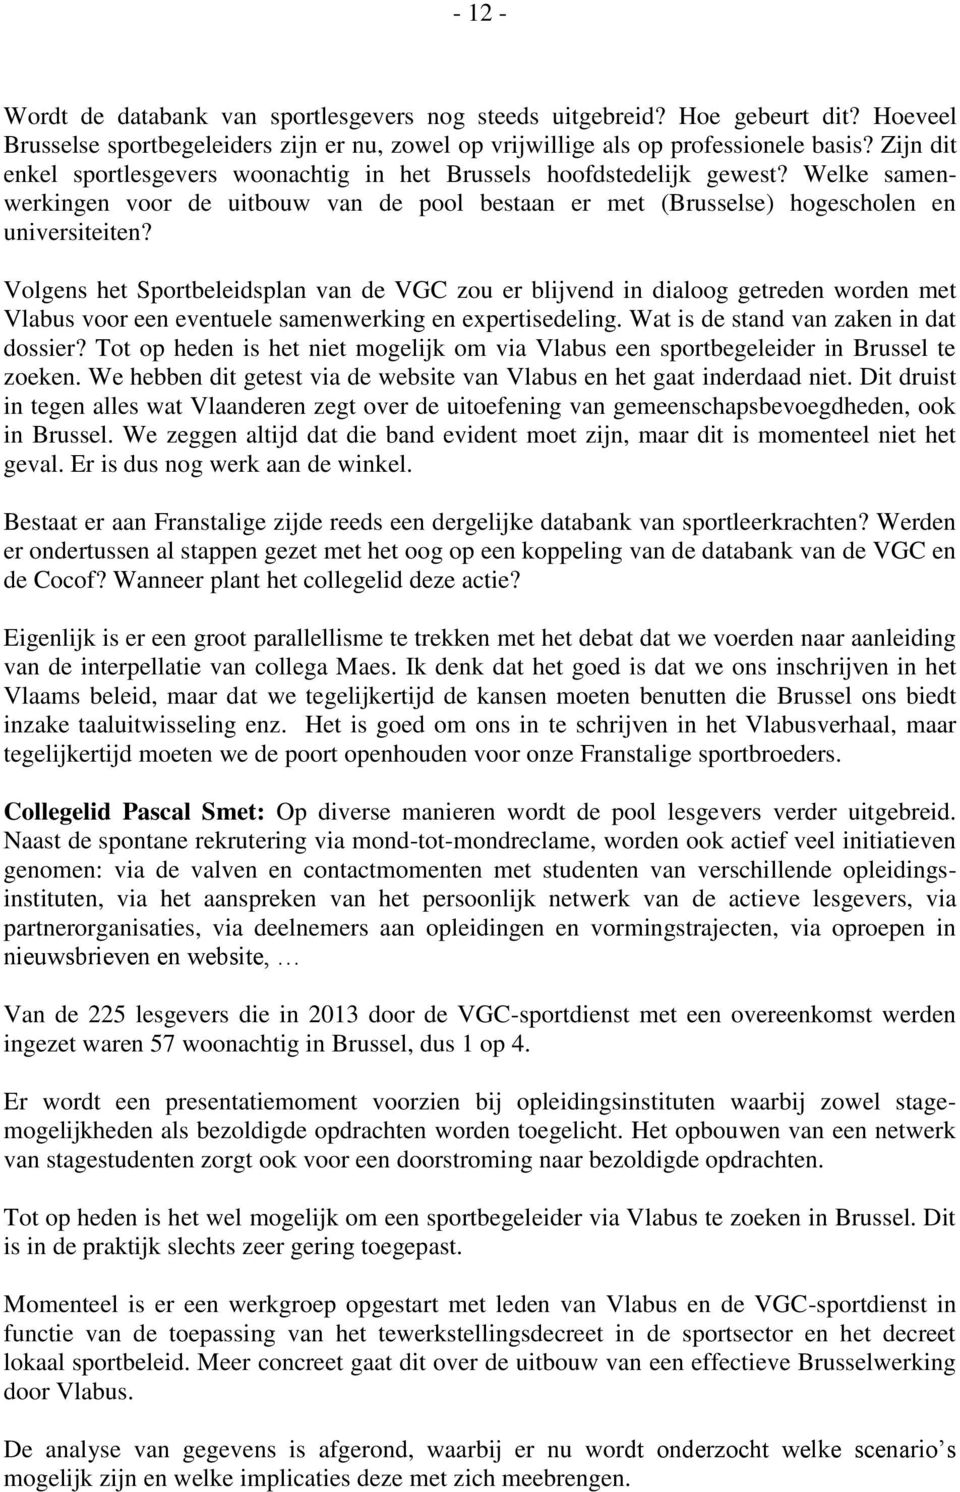 Volgens het Sportbeleidsplan van de VGC zou er blijvend in dialoog getreden worden met Vlabus voor een eventuele samenwerking en expertisedeling. Wat is de stand van zaken in dat dossier?